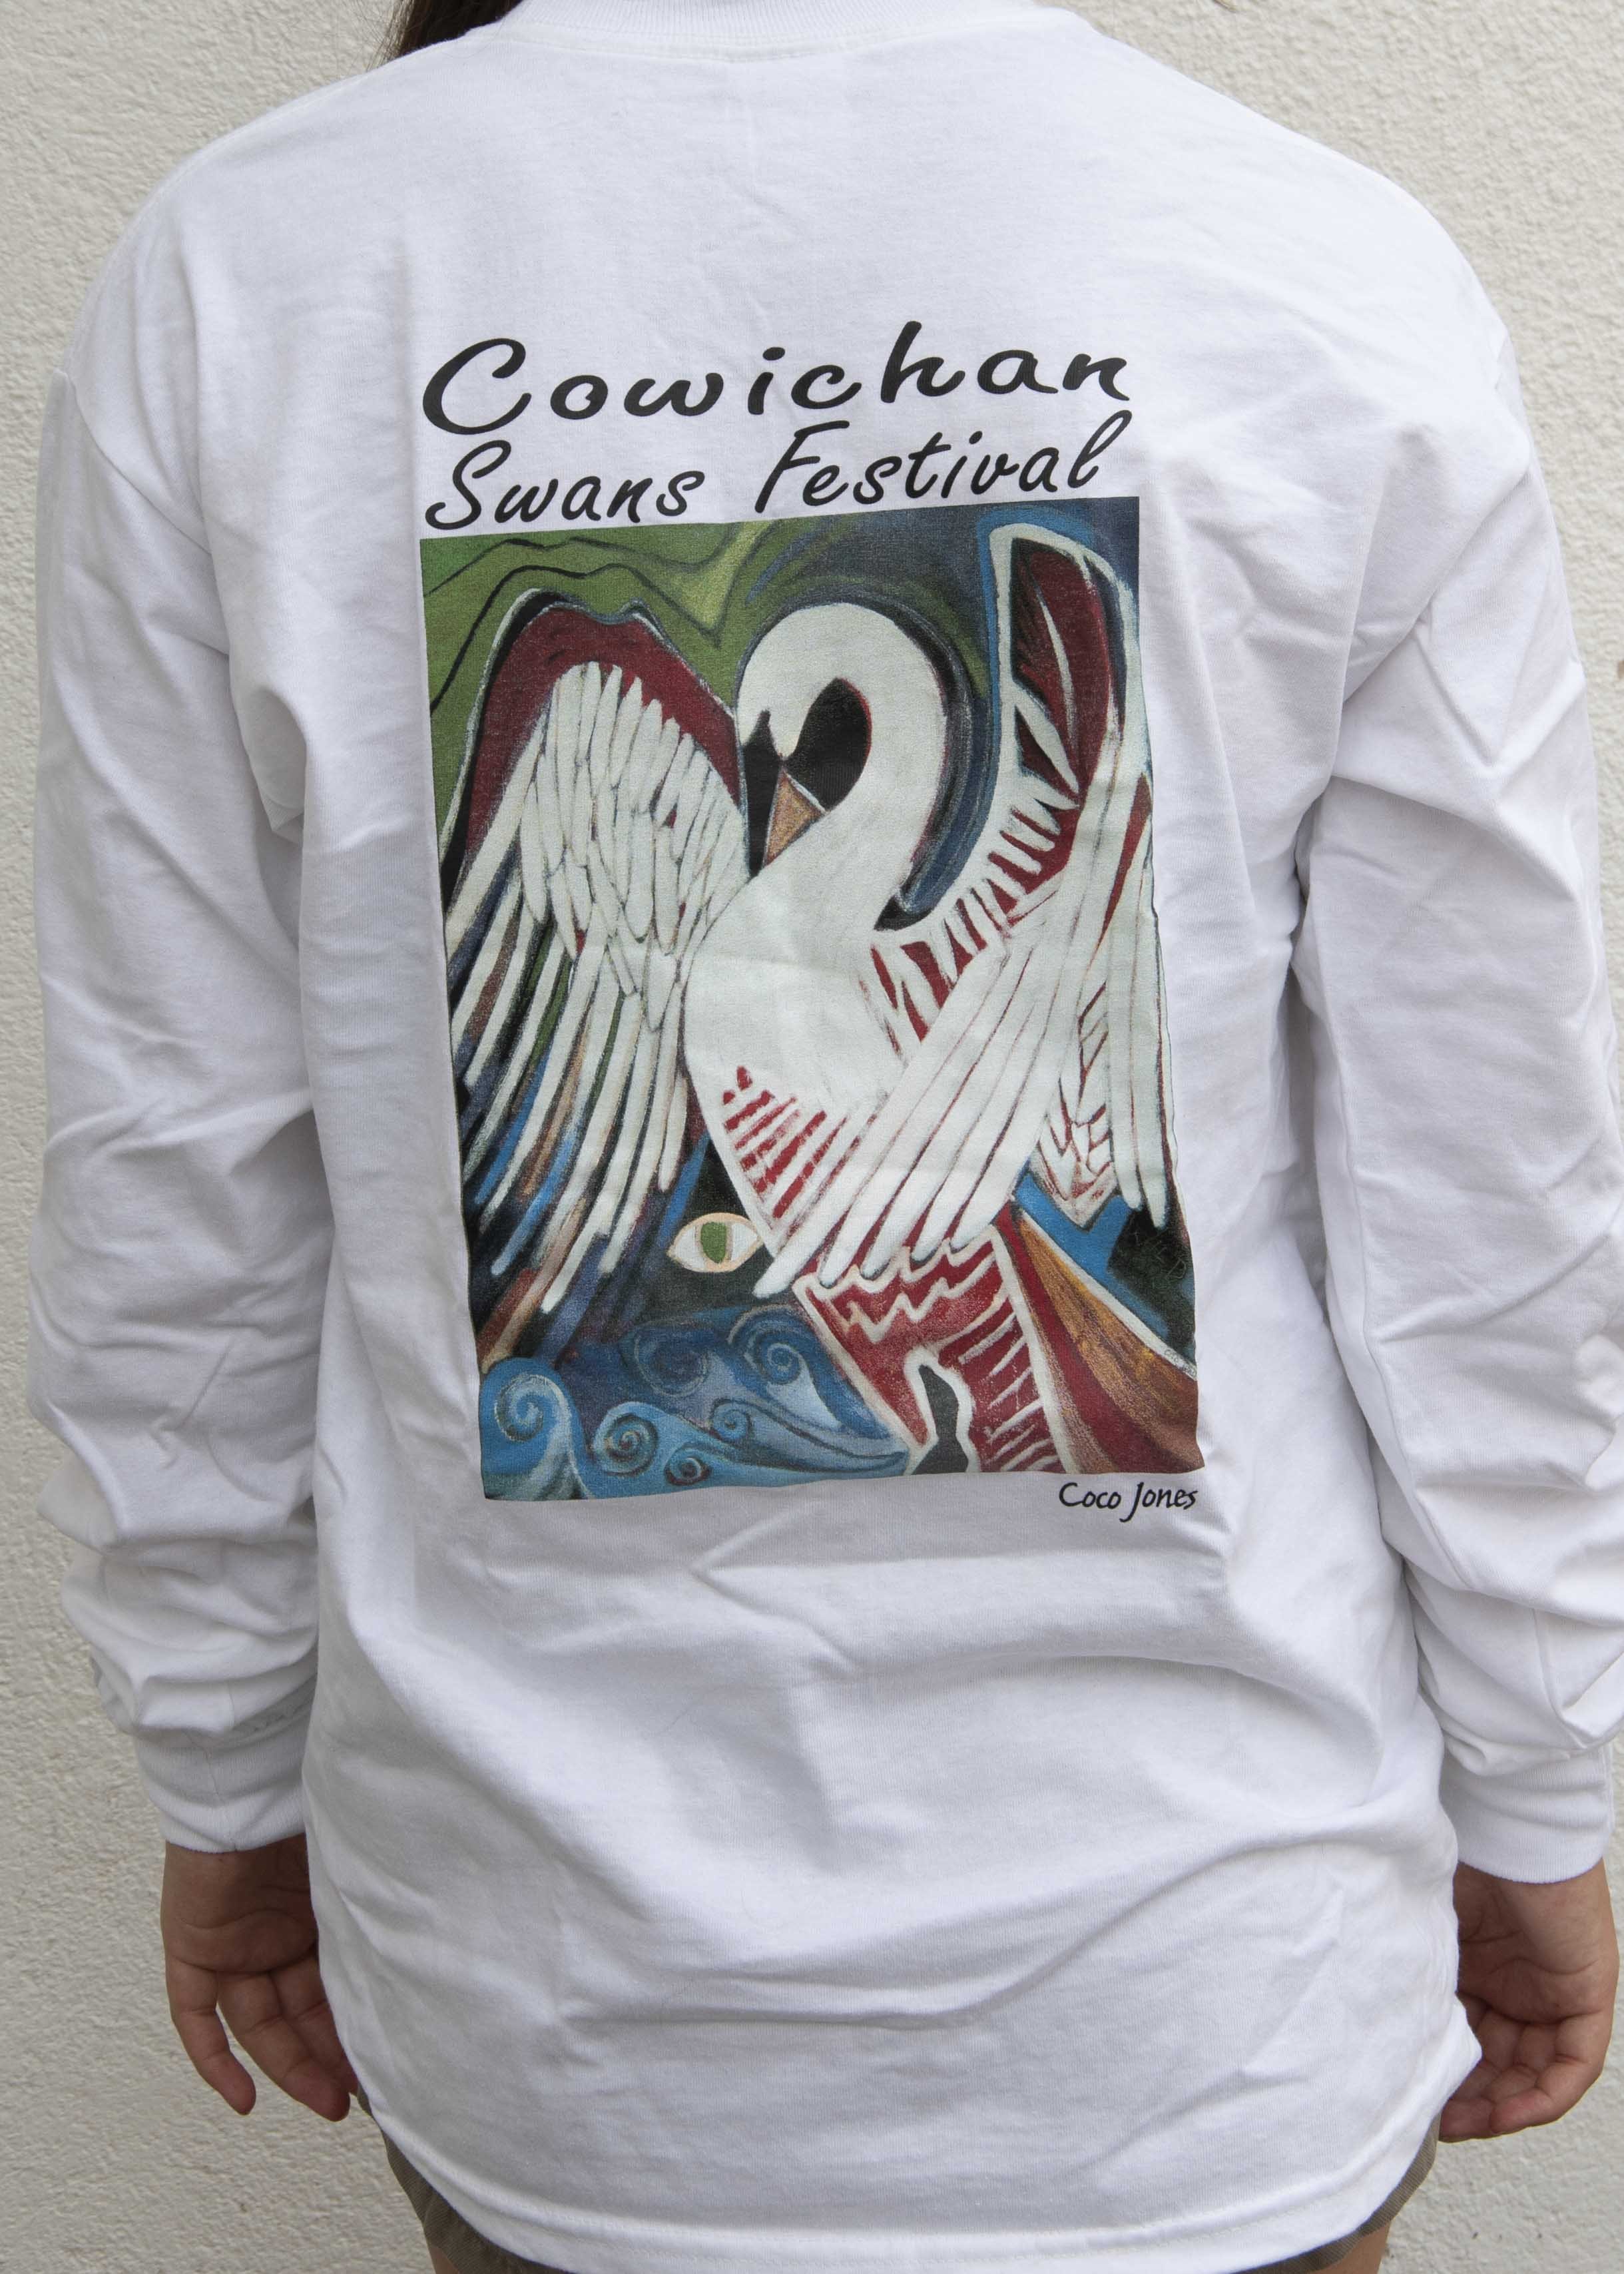 "Cowichan Swan's Festival" by Coco Jones $50